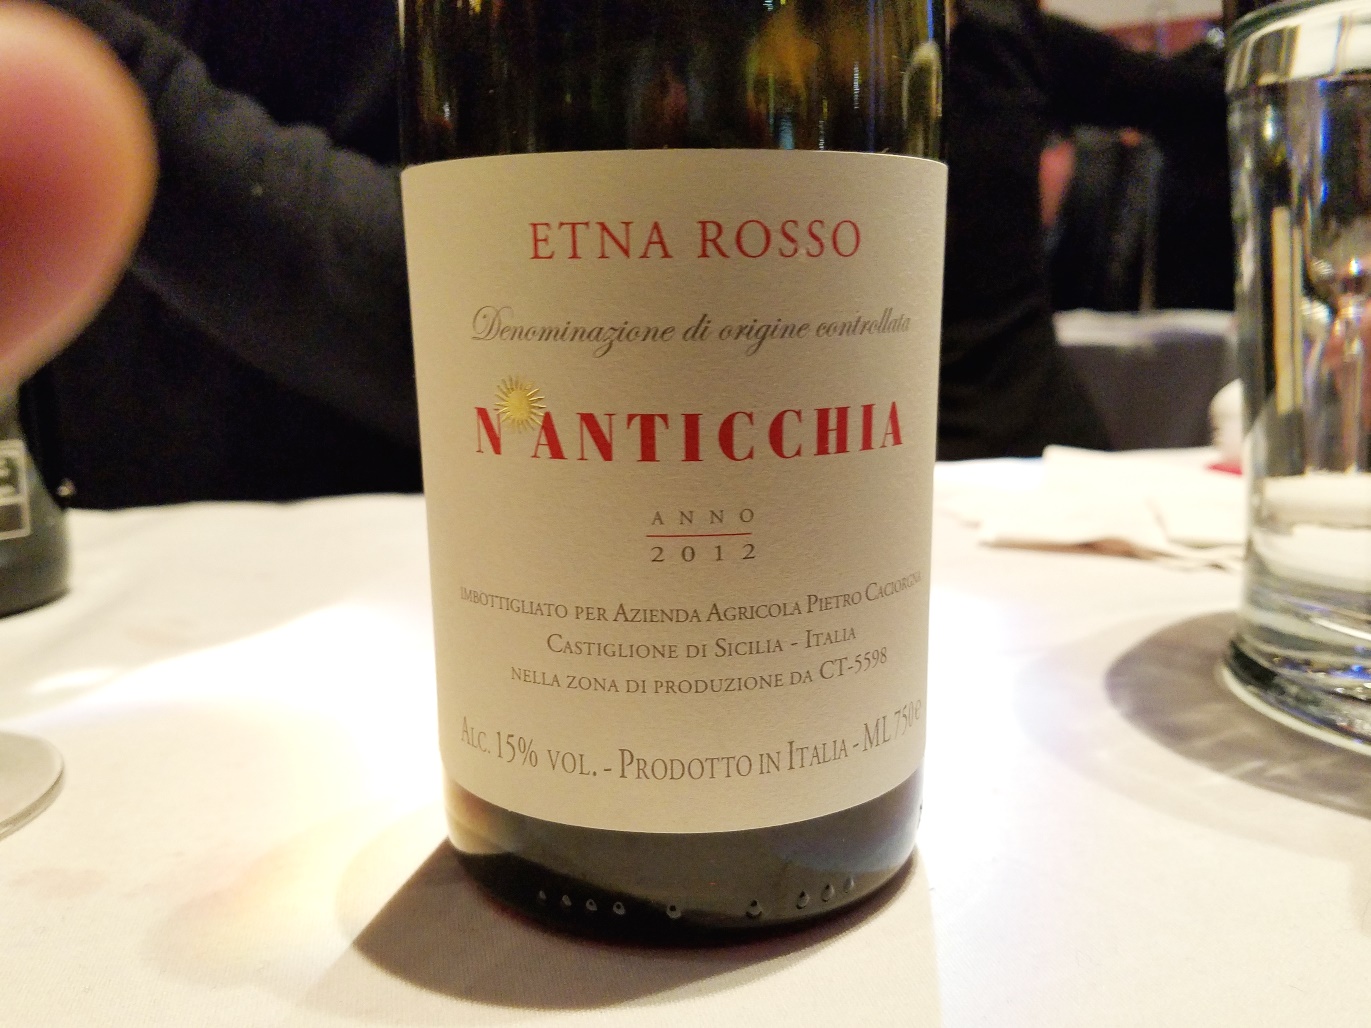 Pietro Caciorgna Etna Rosso, N’Anticchia 2012, Sicily, Italy, Wine Casual